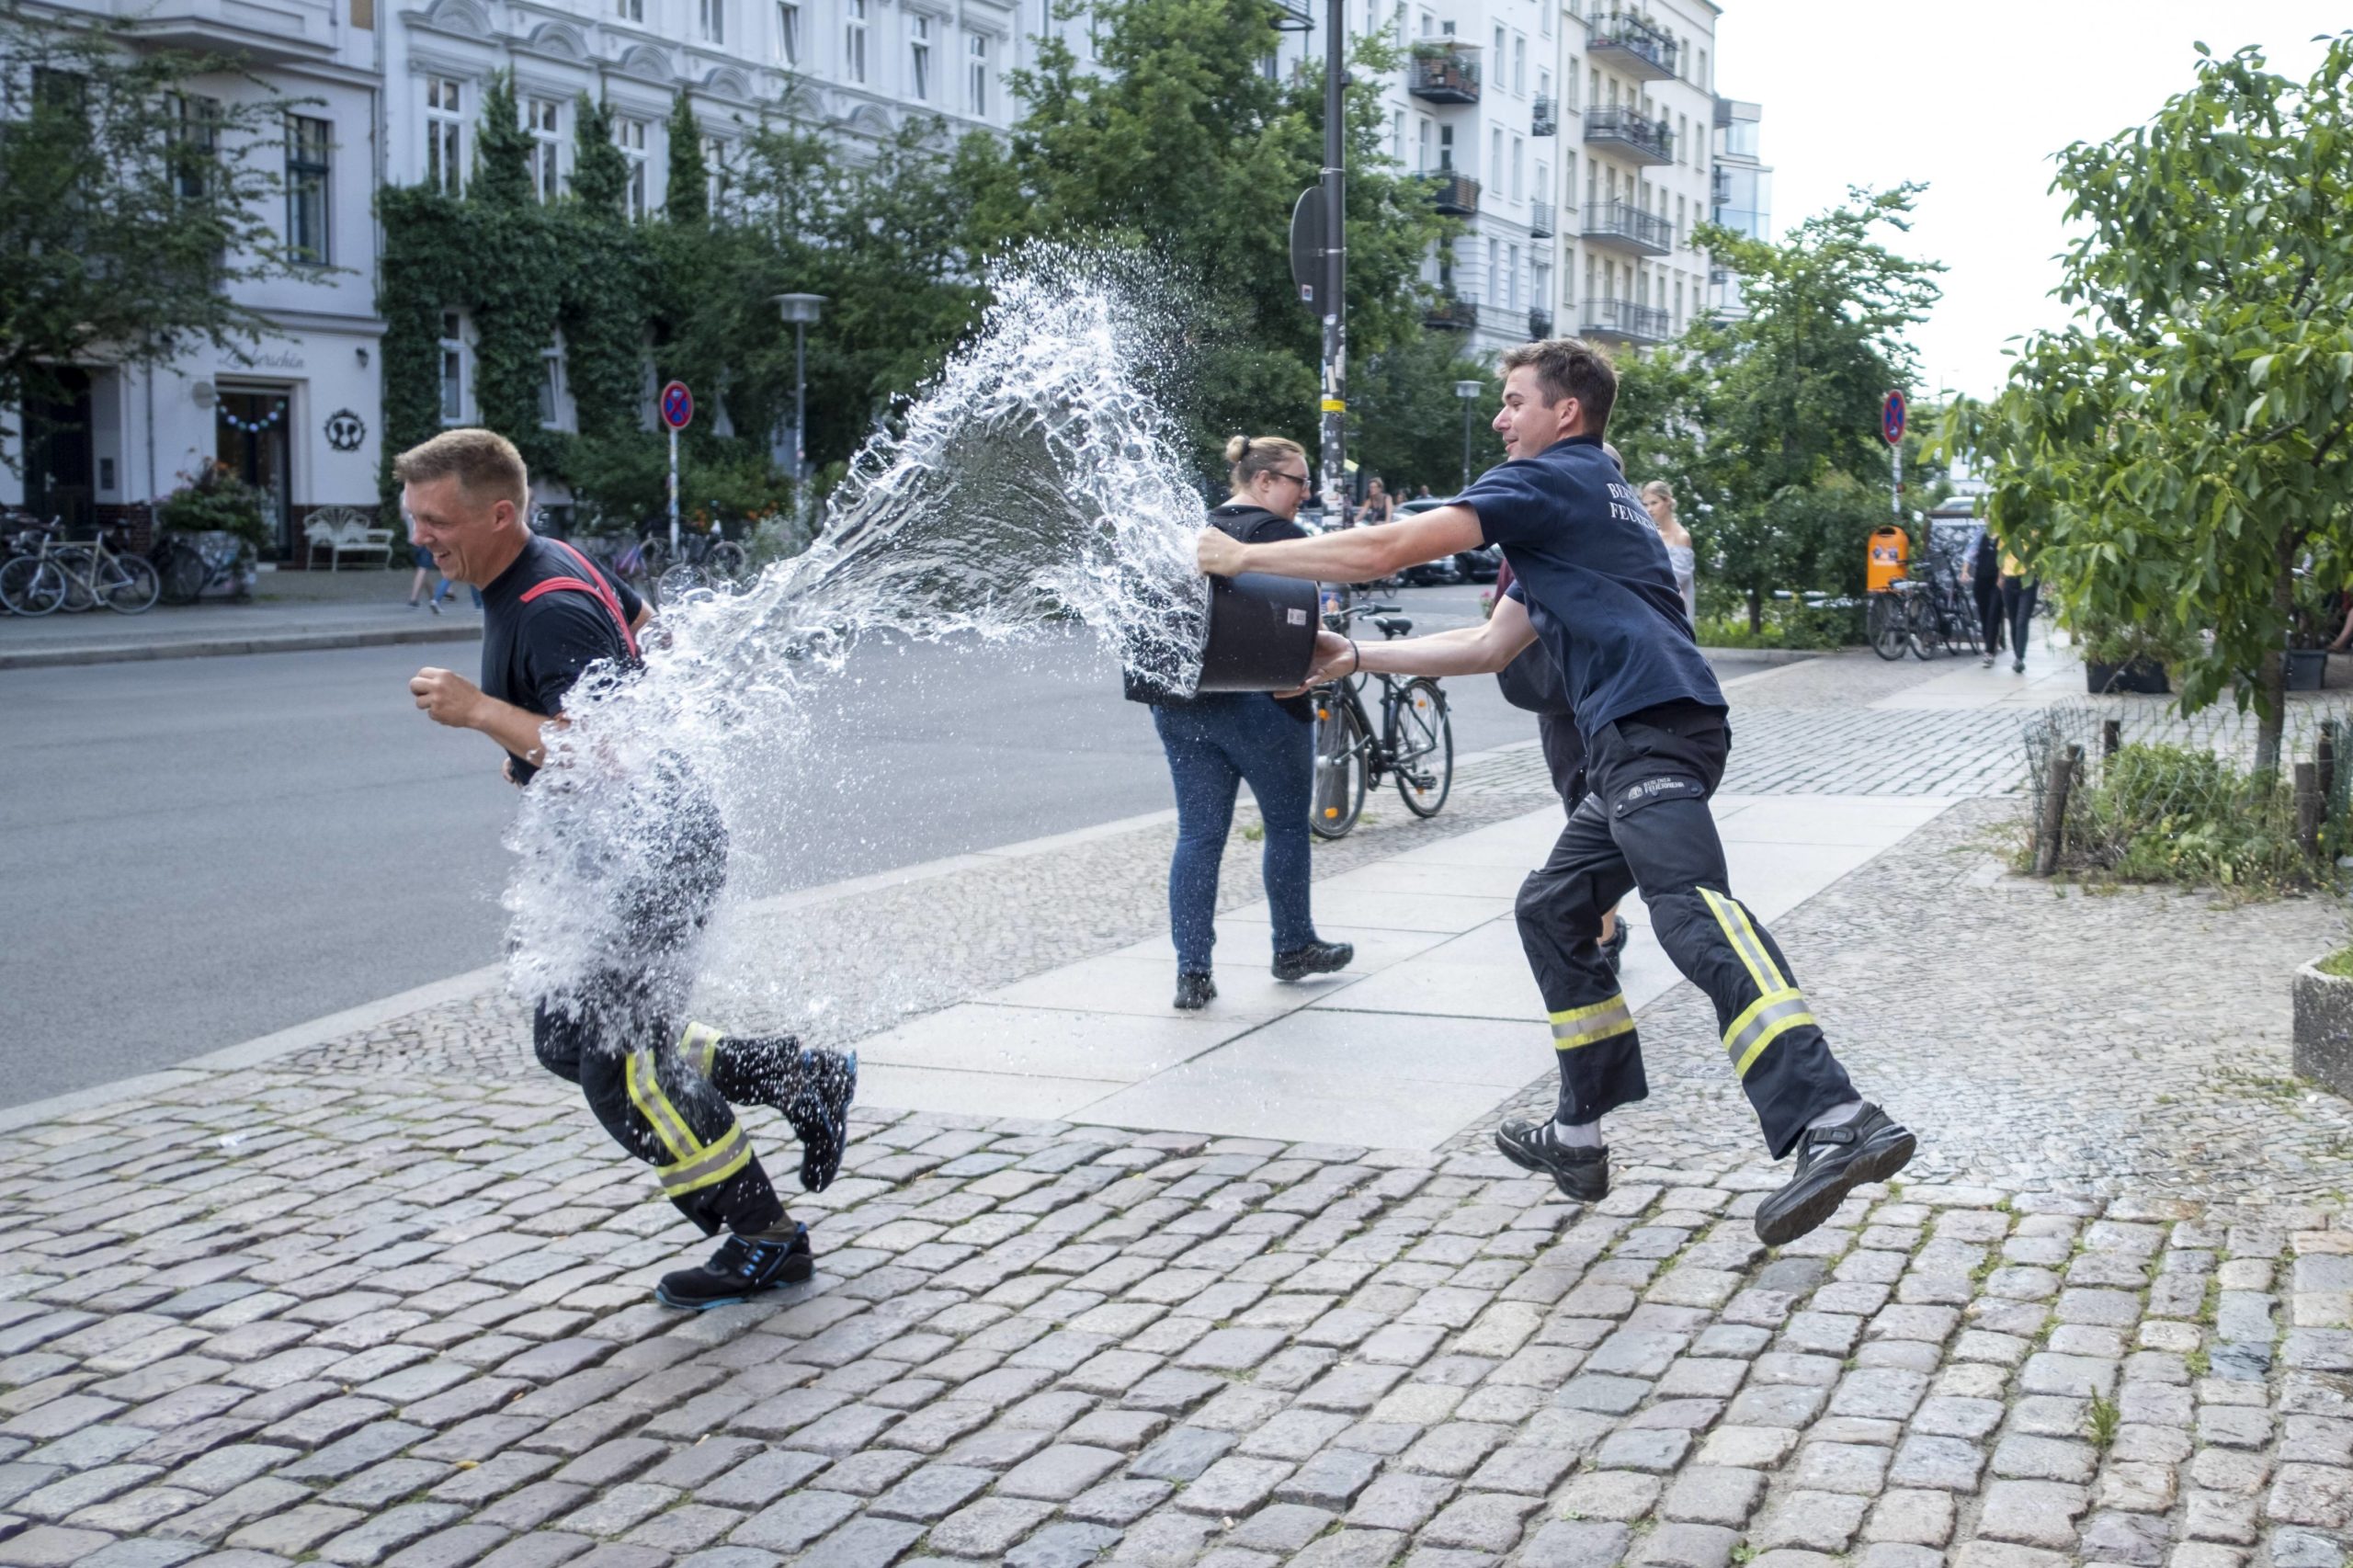 Feuerwehrleute der Feuerwache in der Oderberger Straße in Prenzlauer Berg verpassen einem Kollegen eine Wasserdusche. Foto: Imago/Snapshot